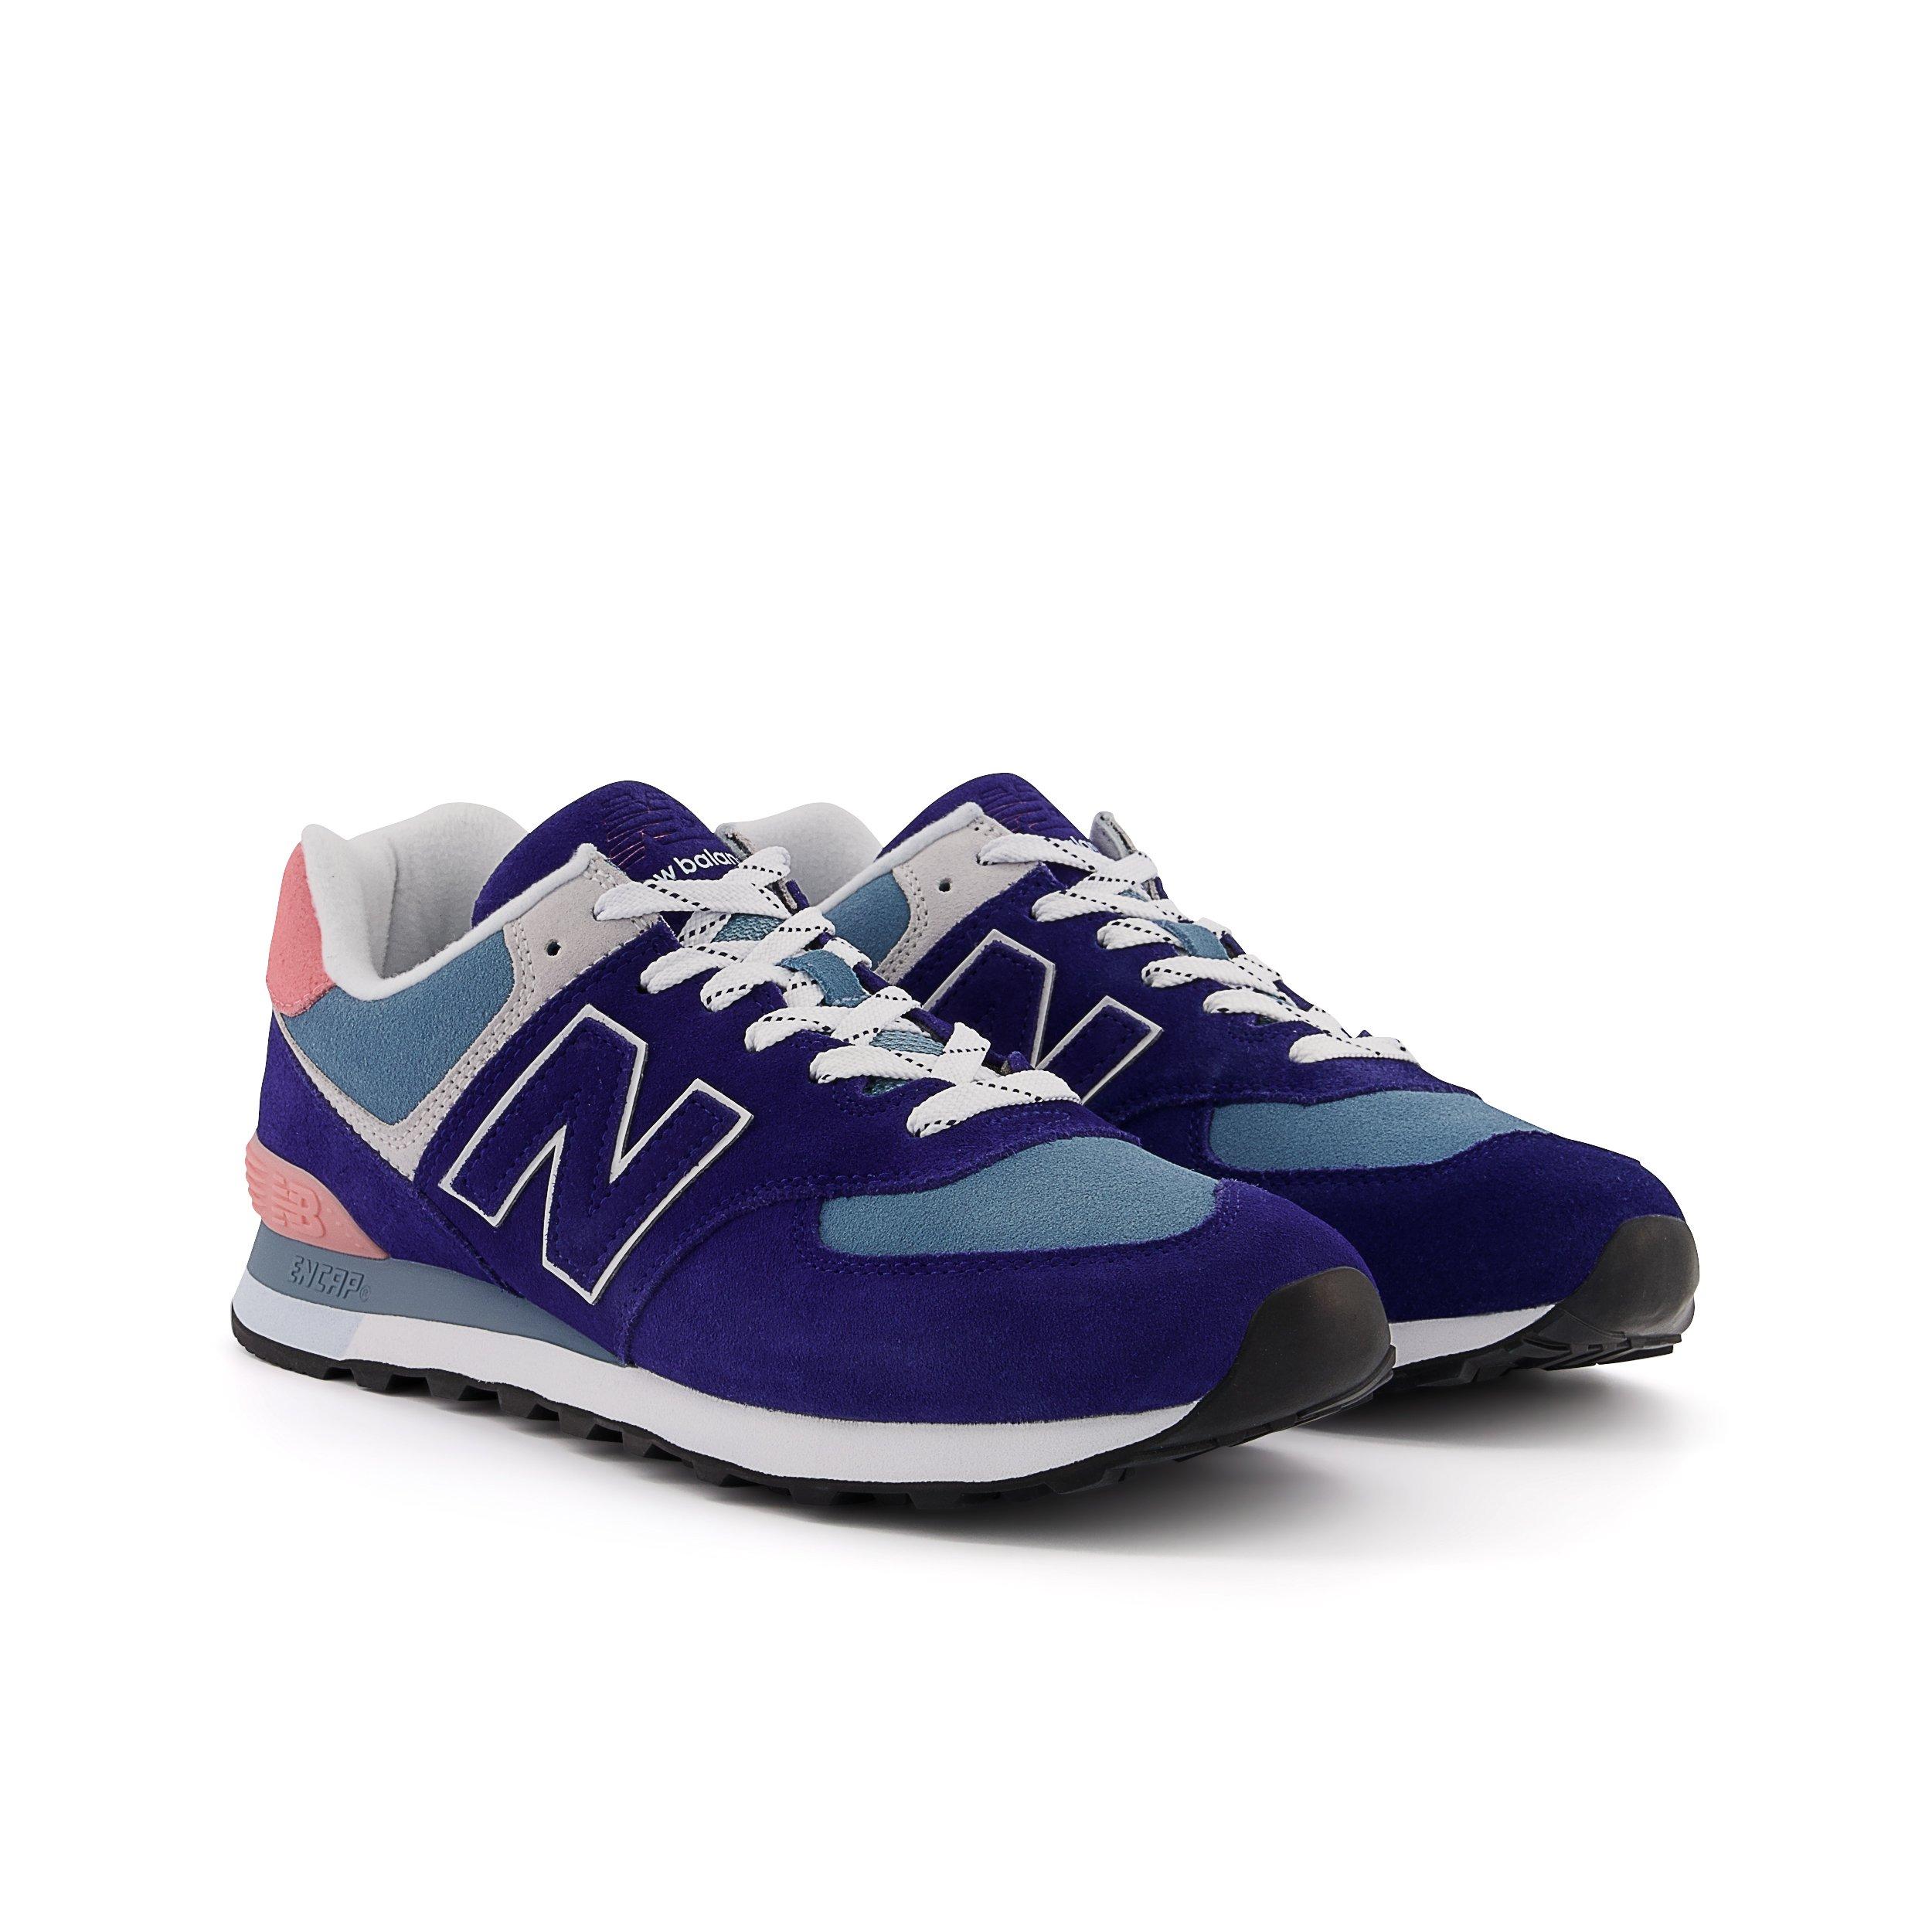 New Balance 574 "Navy/Blue/Pink" Men's Shoe Hibbett | City